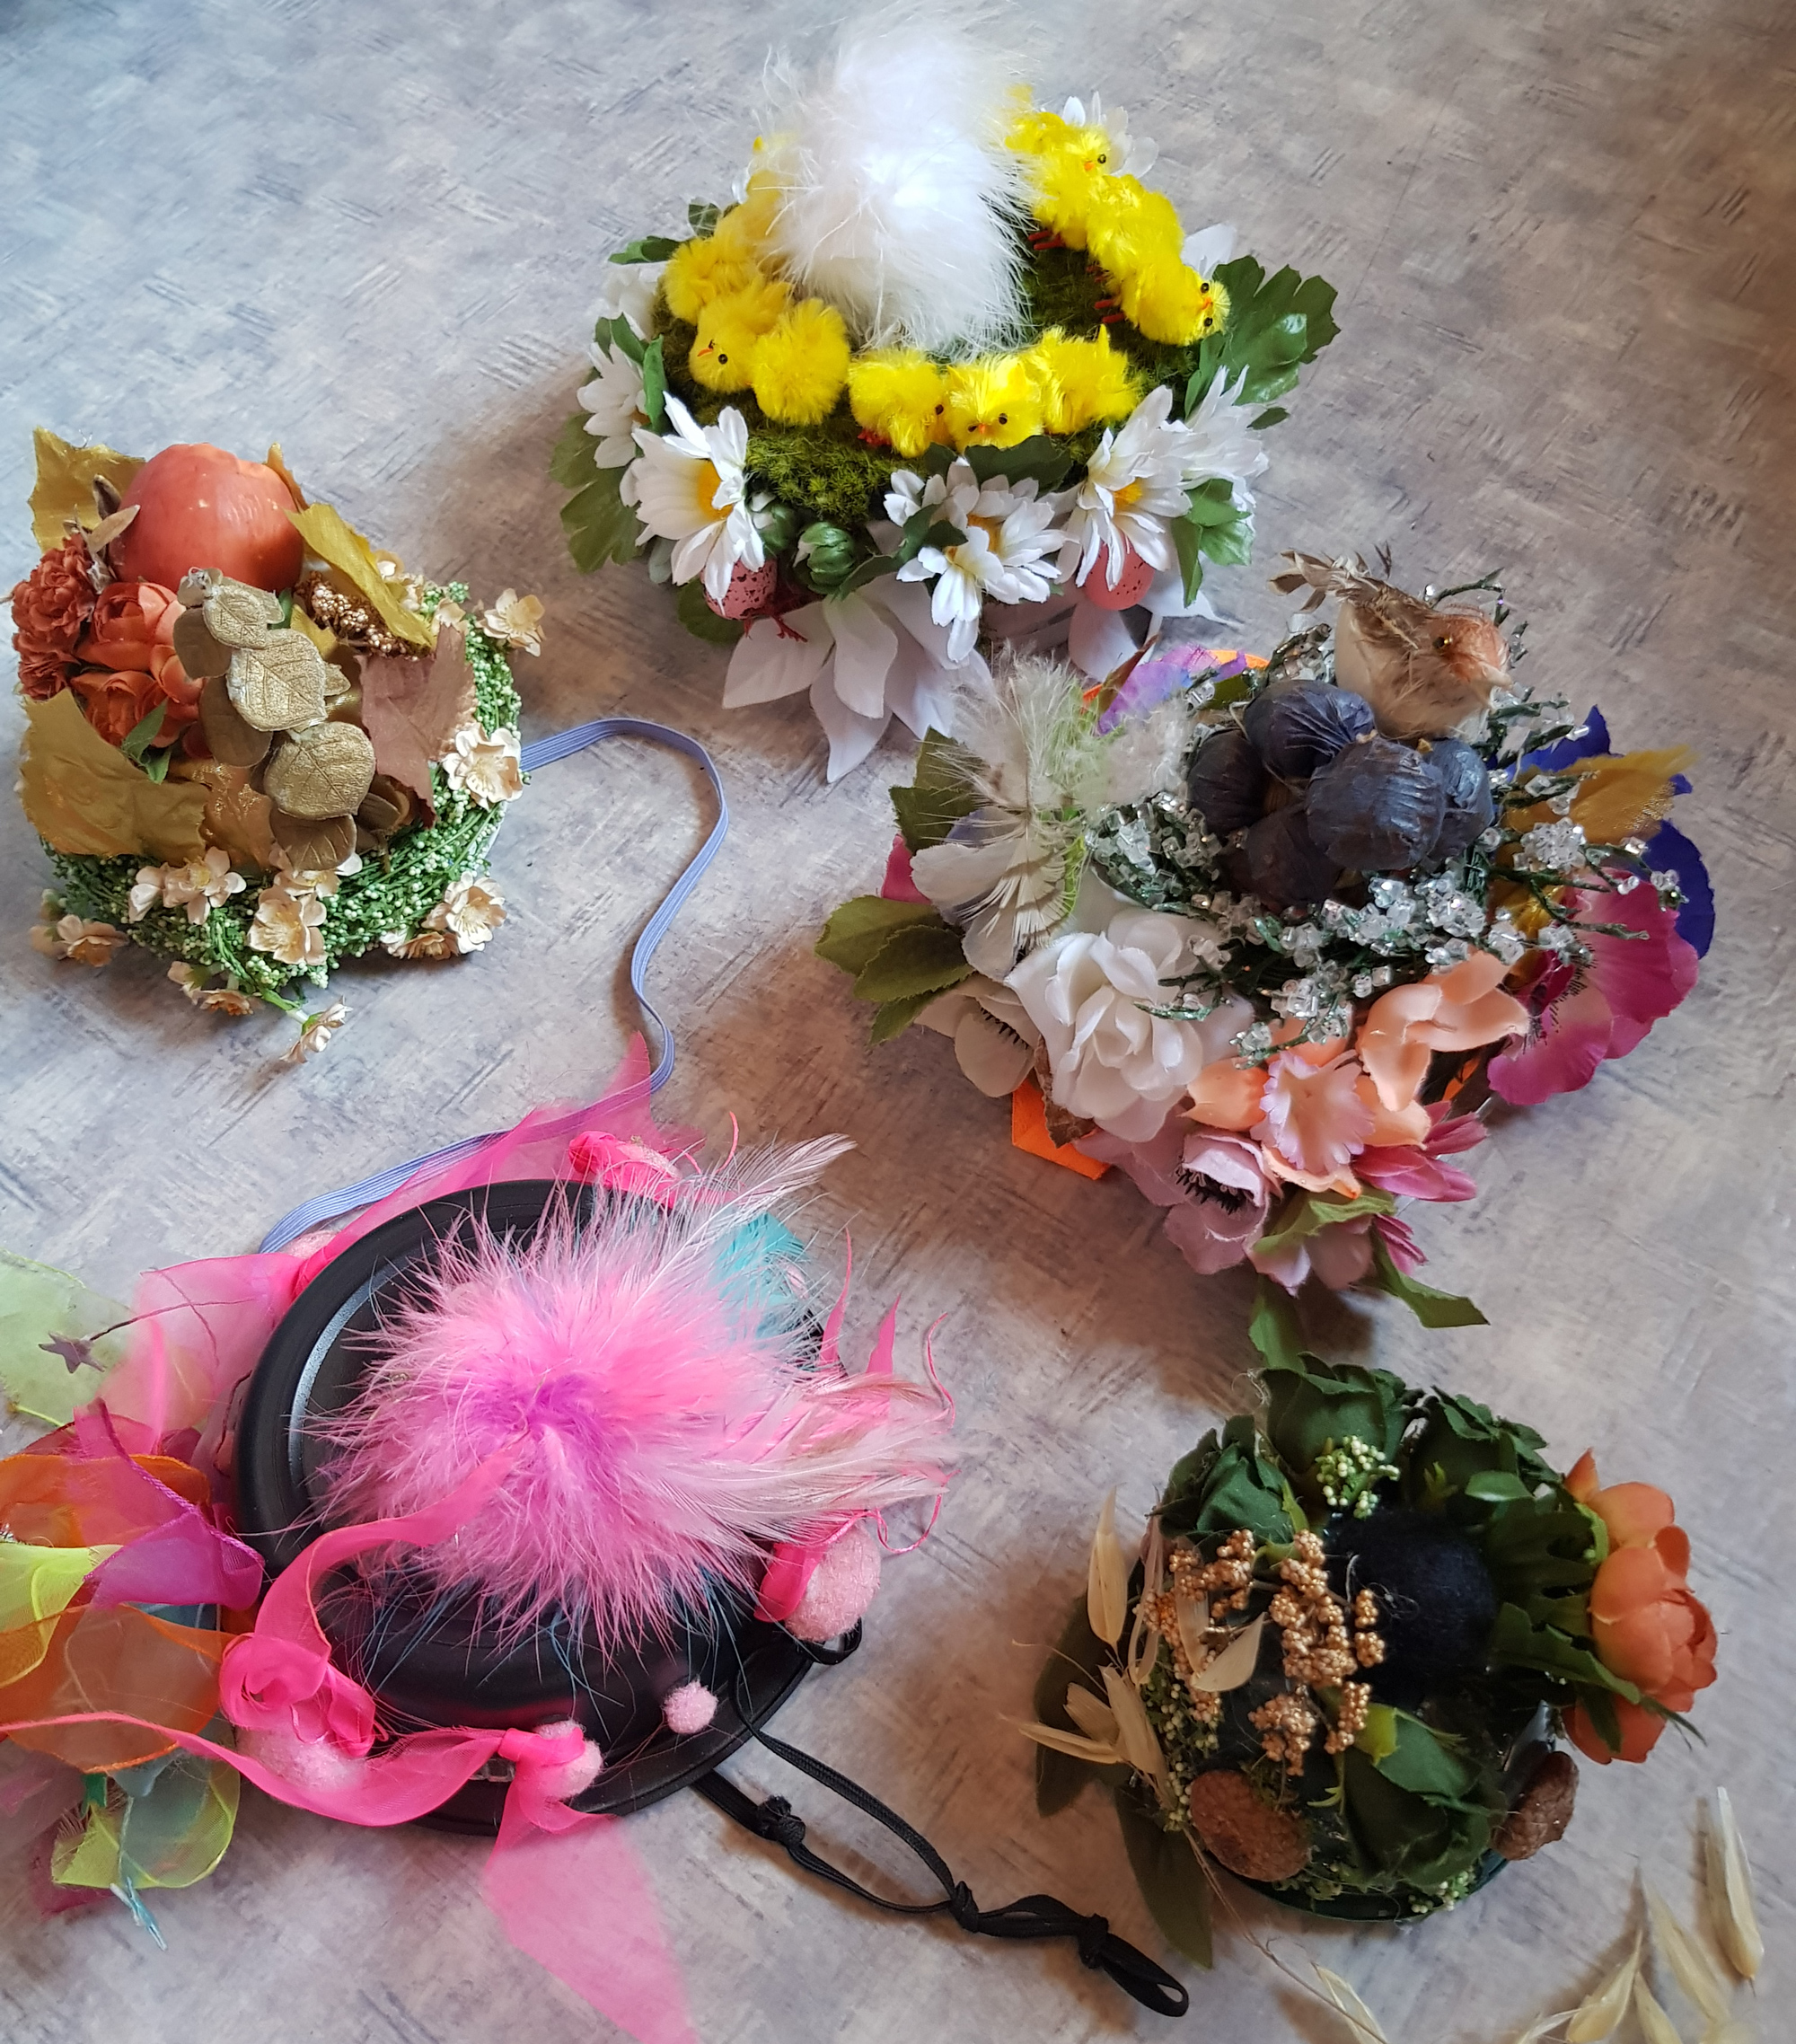 Hatter med blomsterpynt, fra hatteverksted :foto